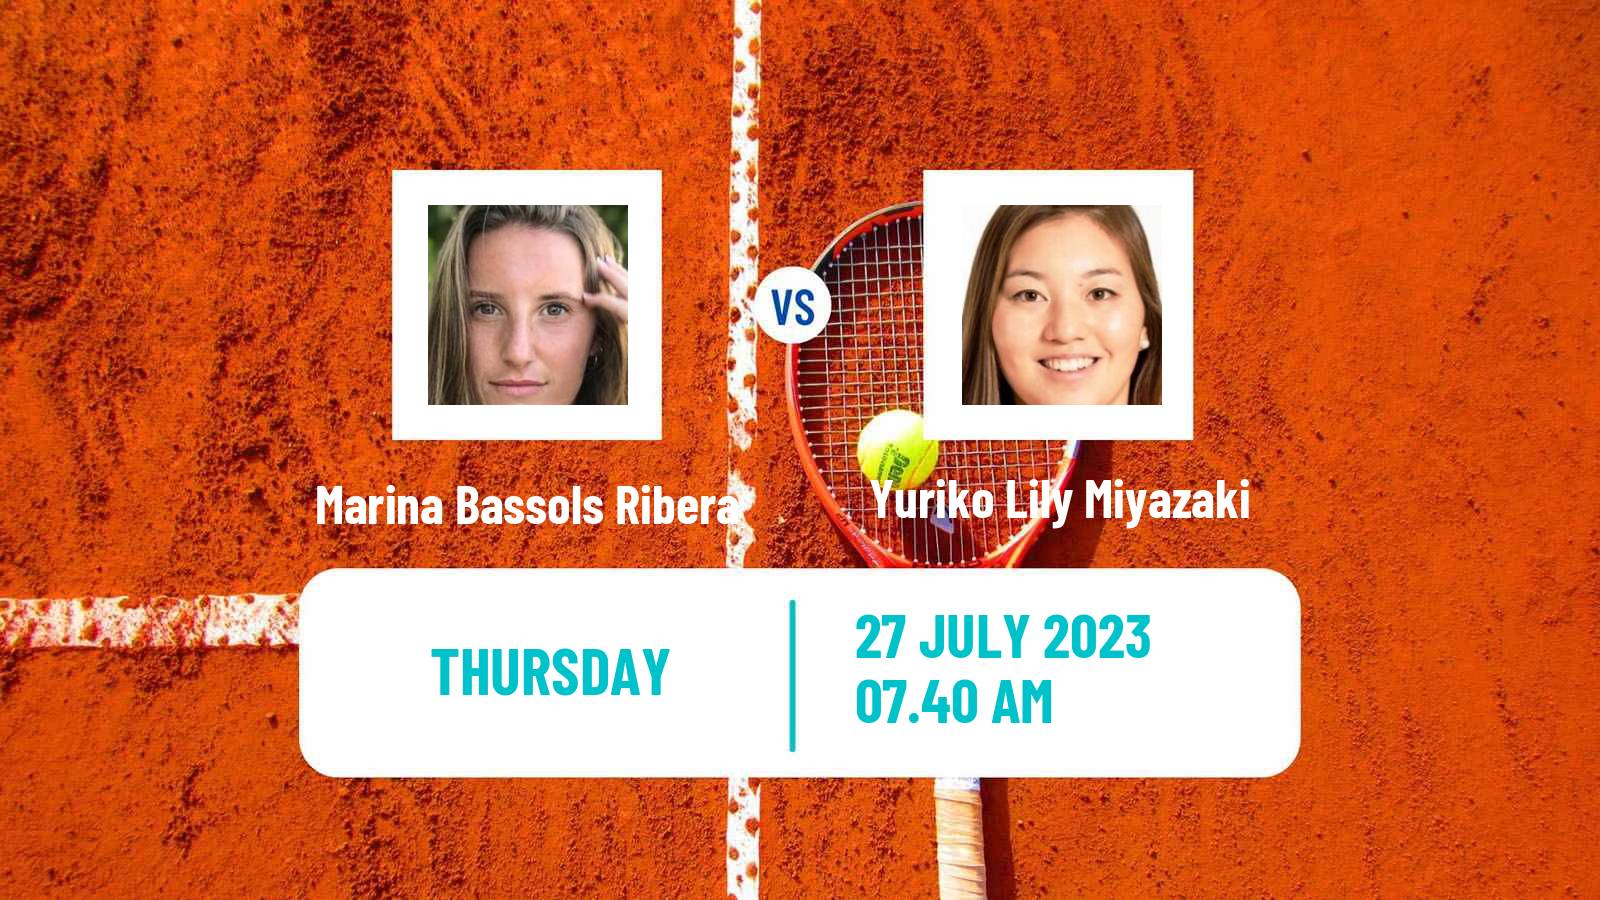 Tennis ITF W100 Figueira Da Foz Women Marina Bassols Ribera - Yuriko Lily Miyazaki